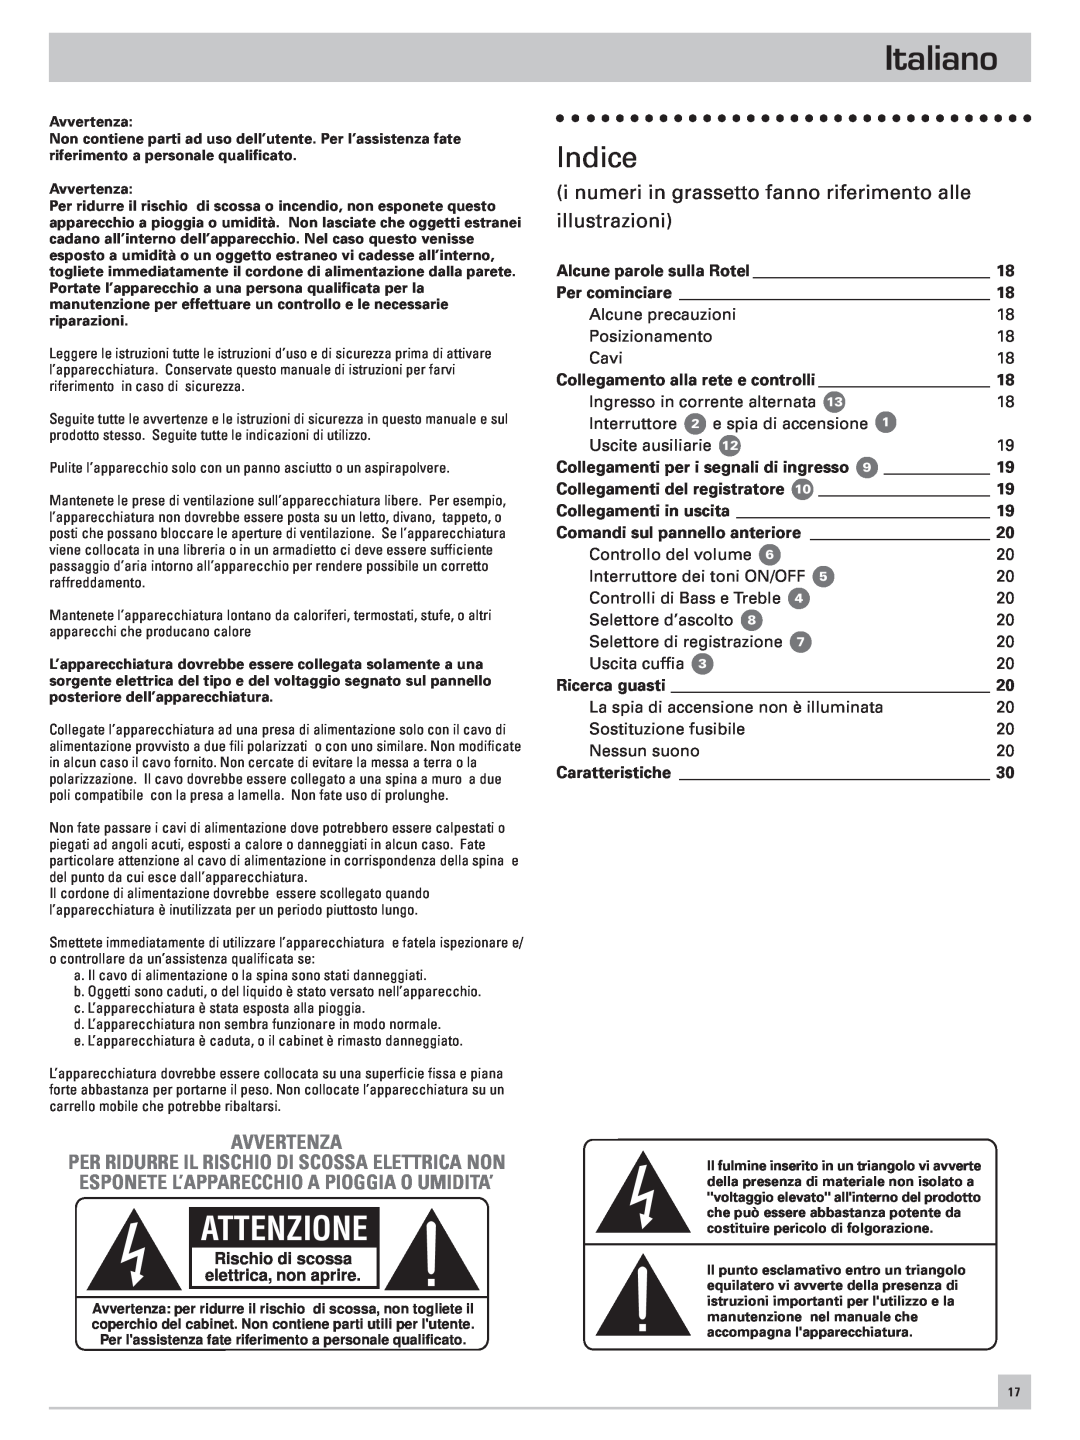 Rotel RC-971 owner manual Italiano, Indice, Avvertenza, Attenzione, Rischio di scossa elettrica, non aprire 